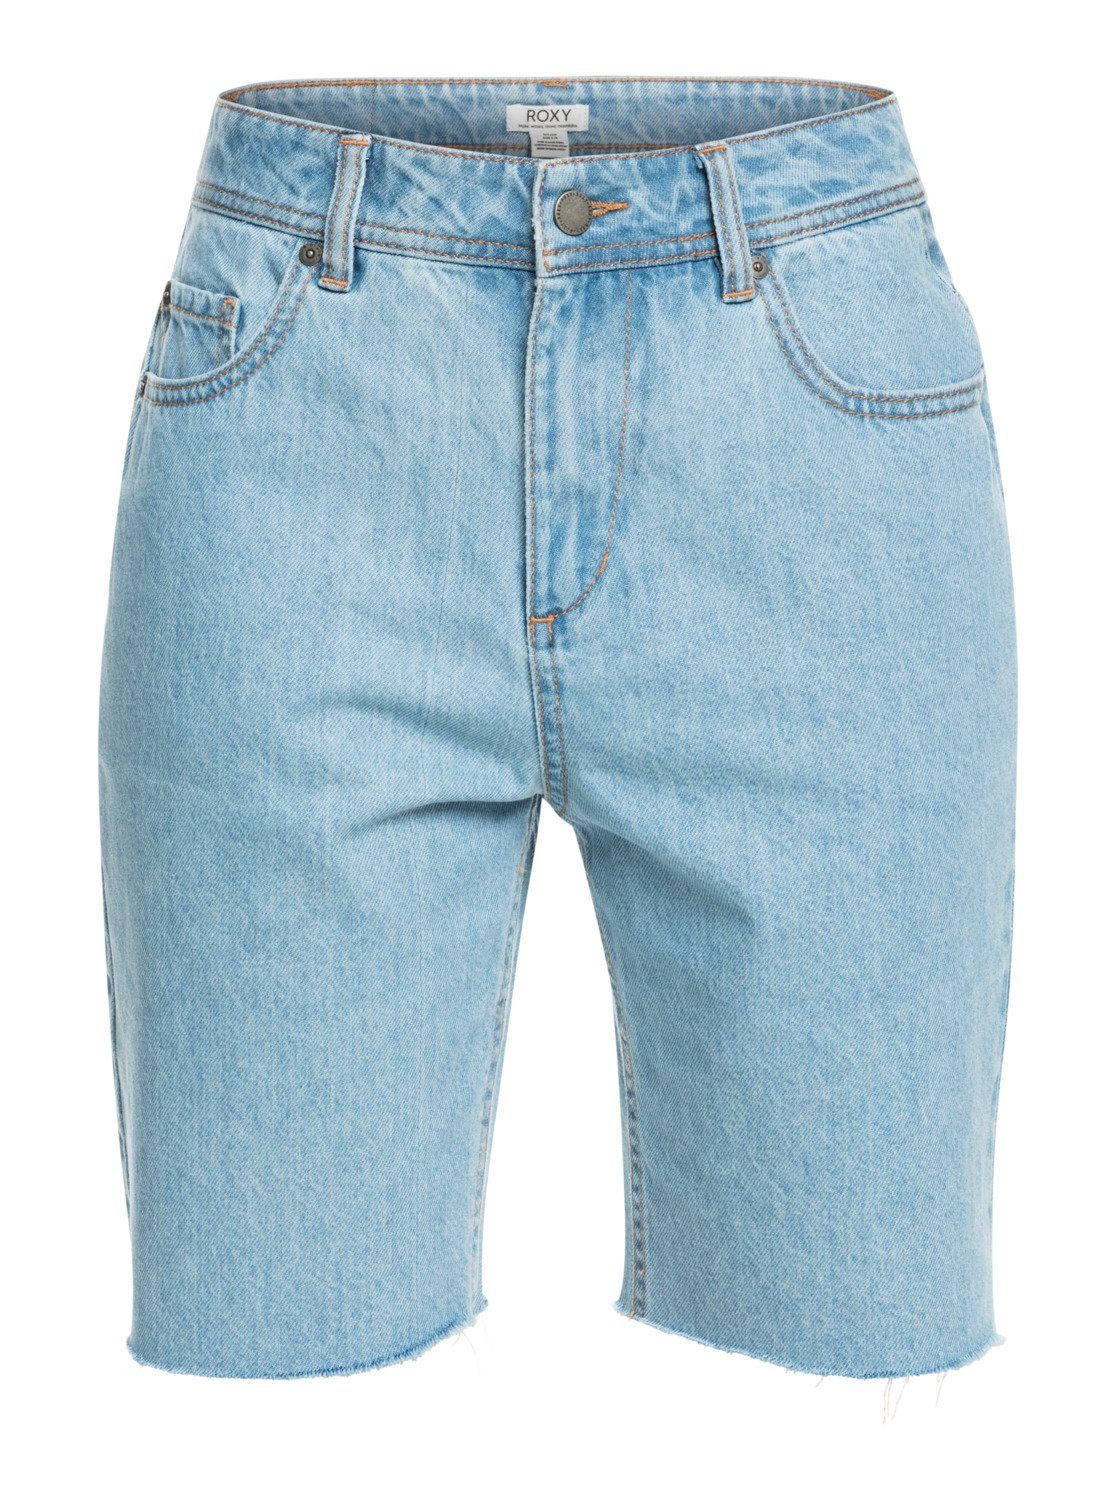 Roxy Jeans Shorts für Damen online kaufen | OTTO